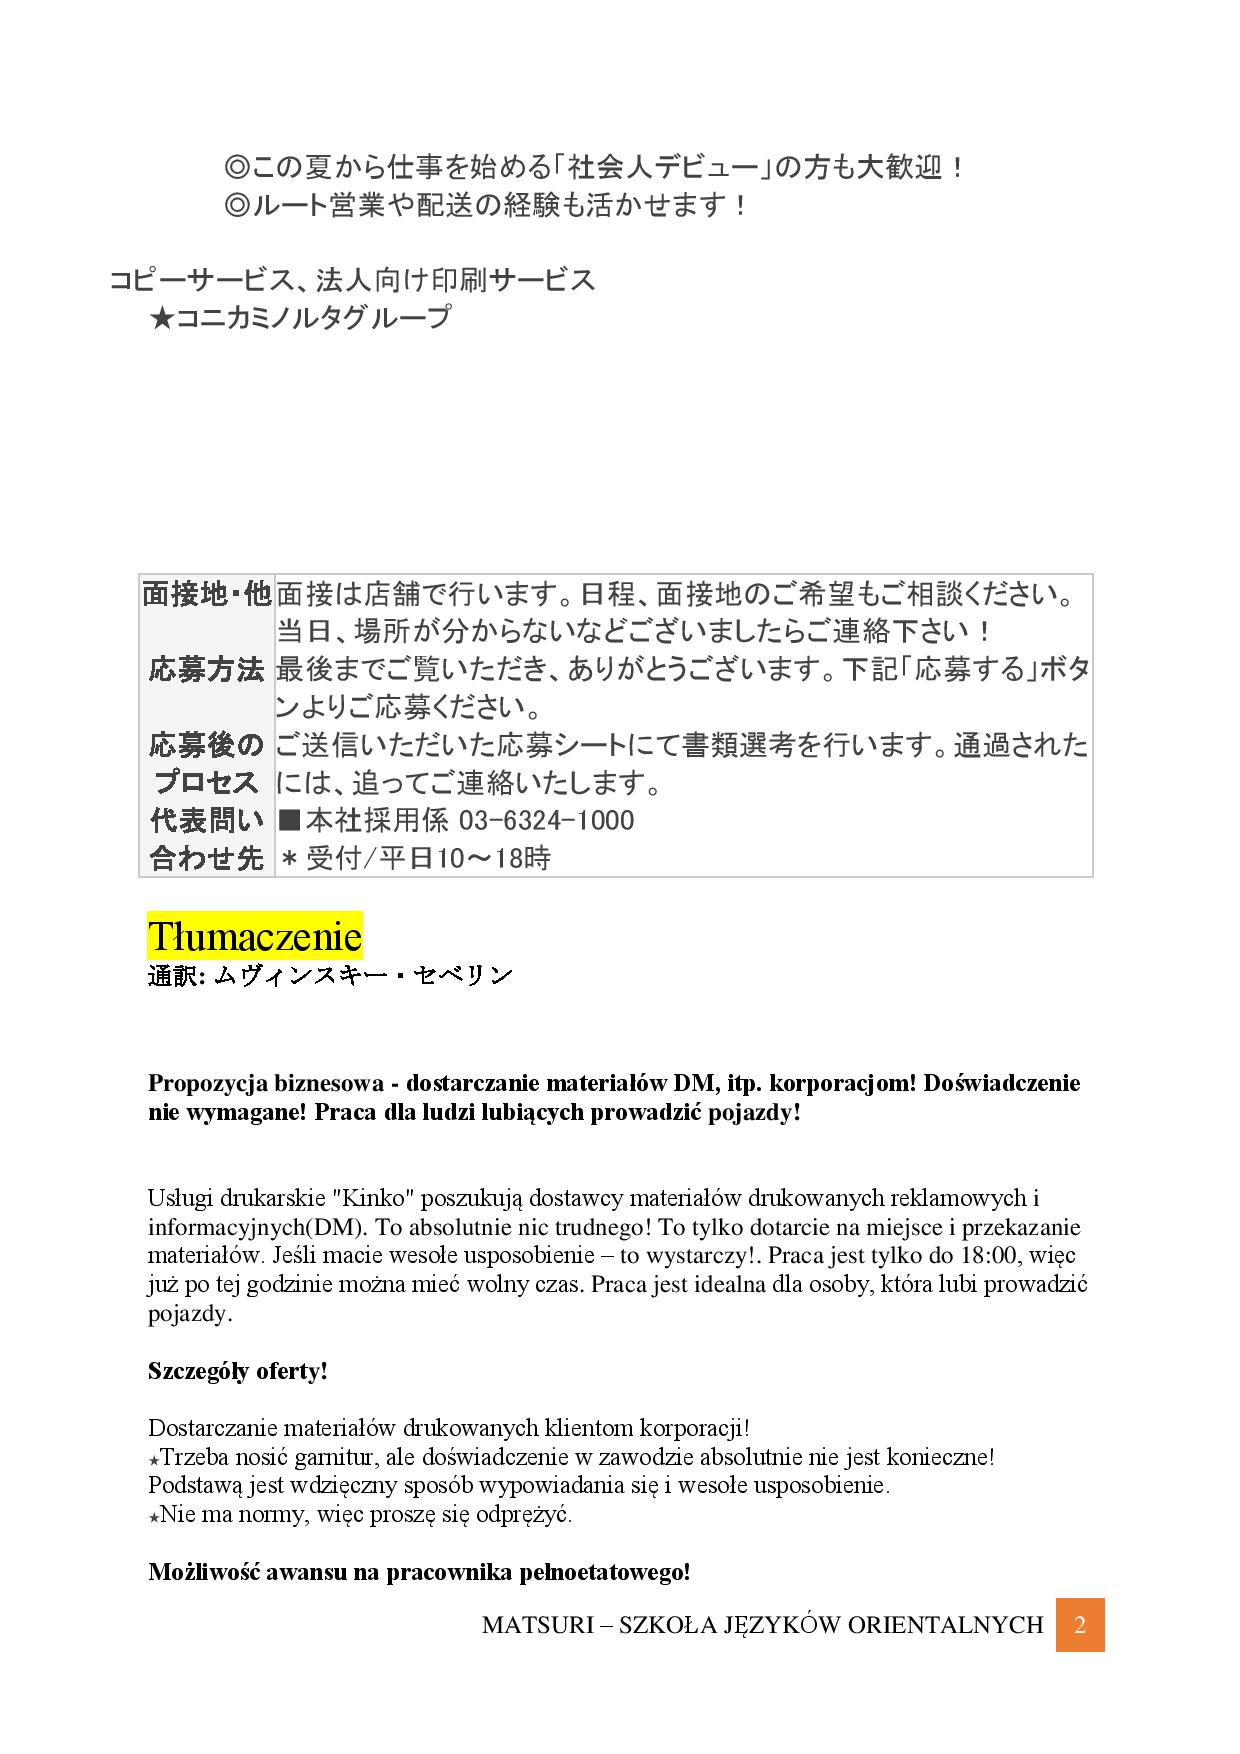 Ogłoszenie o pracę - przykładowe tłumaczenie (poziom średnio-zaawansowany)-page-002